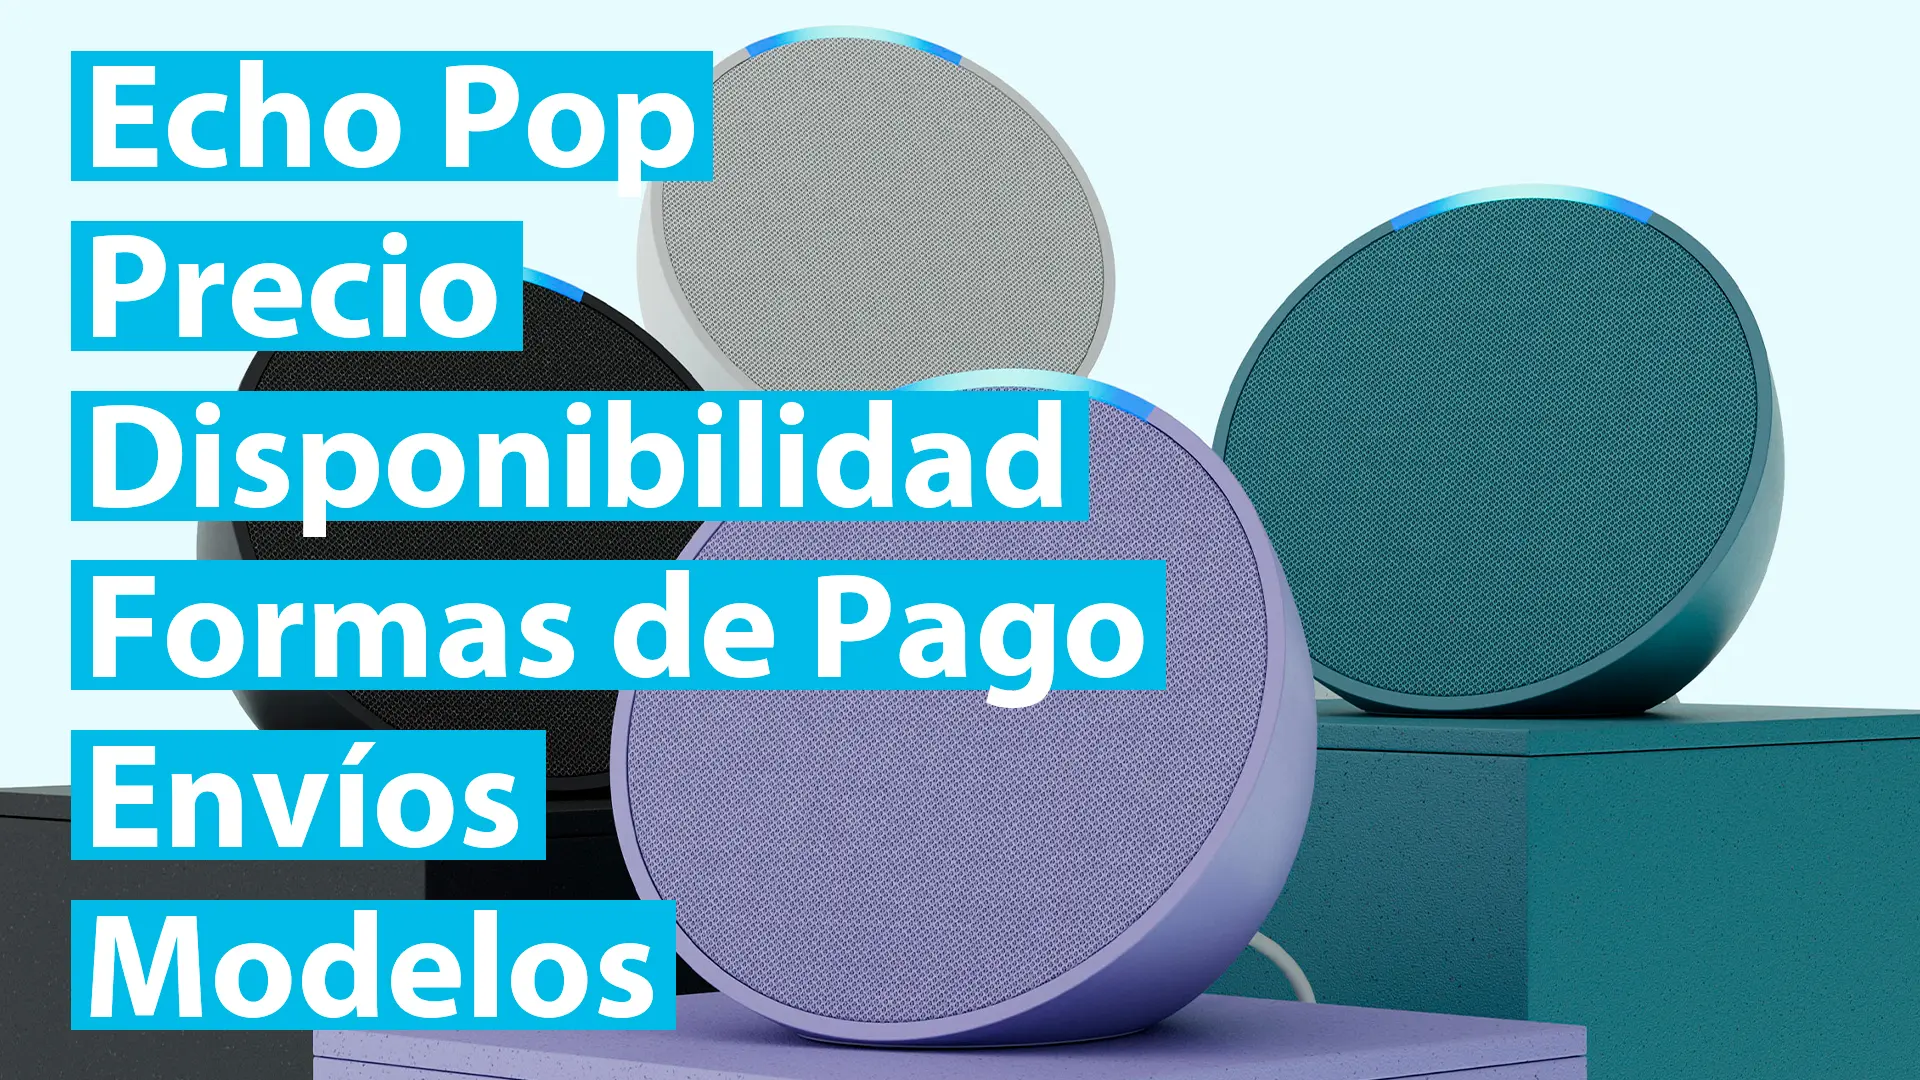 El nuevo Amazon Echo Pop: Precio, Disponibilidad, Formas de Pago, Envíos y Modelos